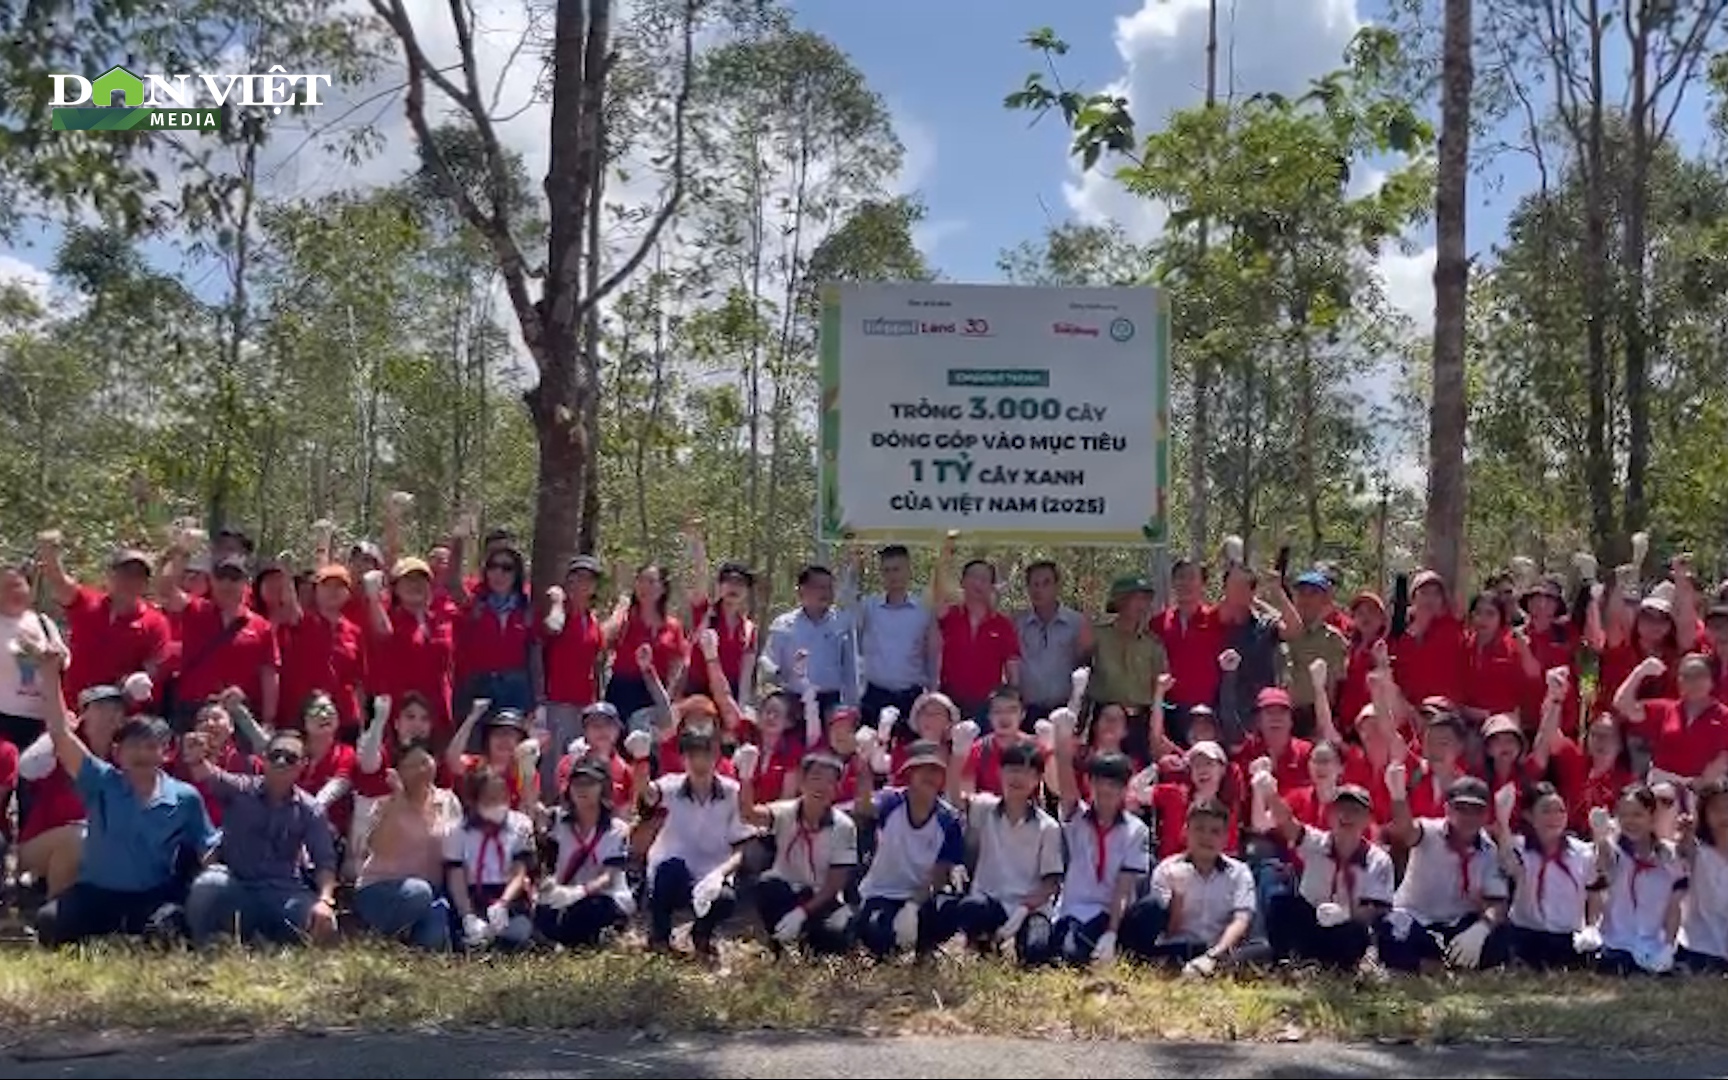 “Lá phổi xanh” Đông Nam Bộ được bổ sung thêm 3.000 cây xanh